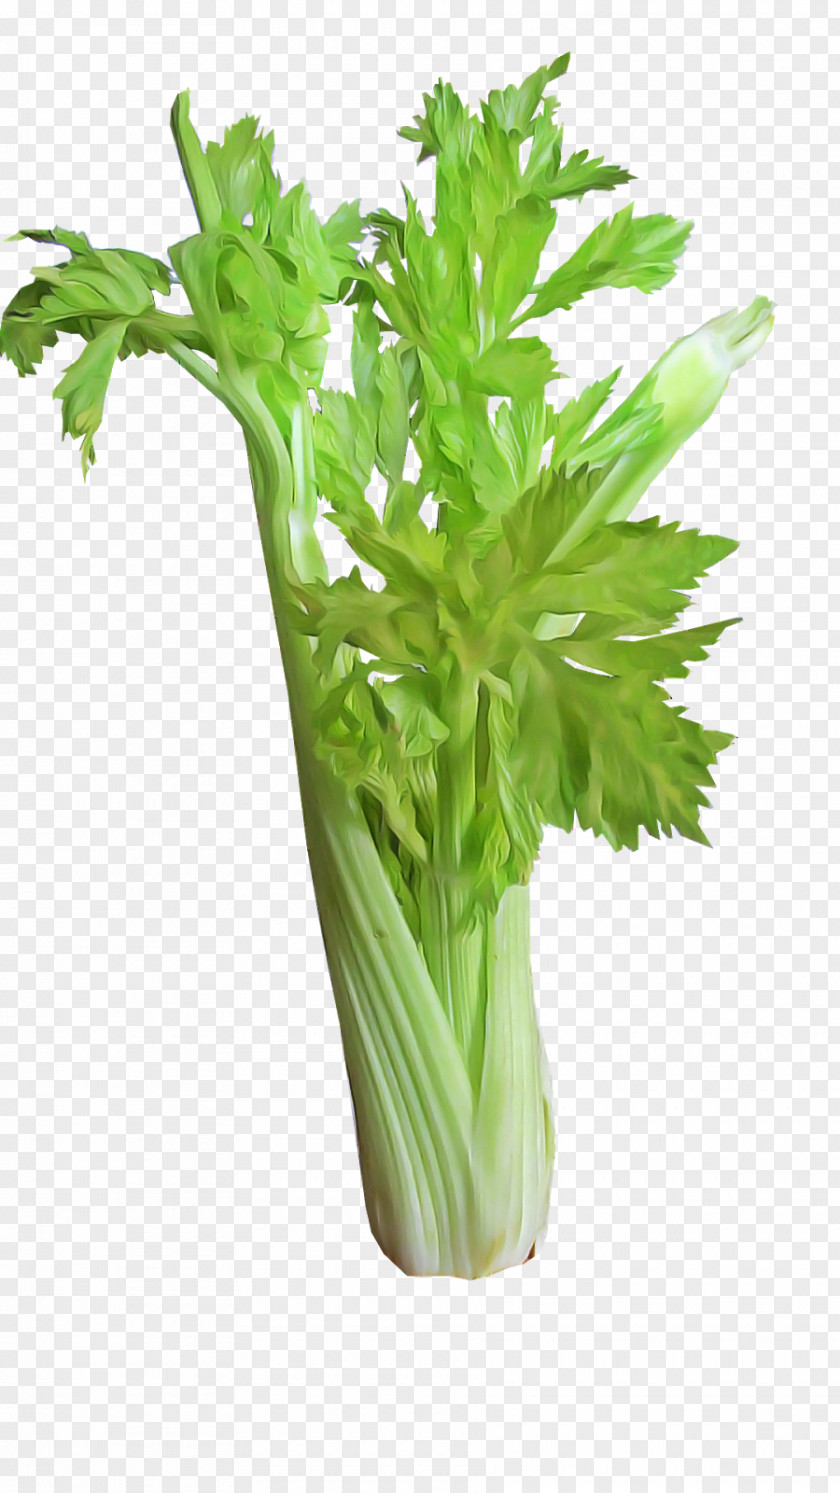 Celery Plant Vegetable Flower Leaf PNG